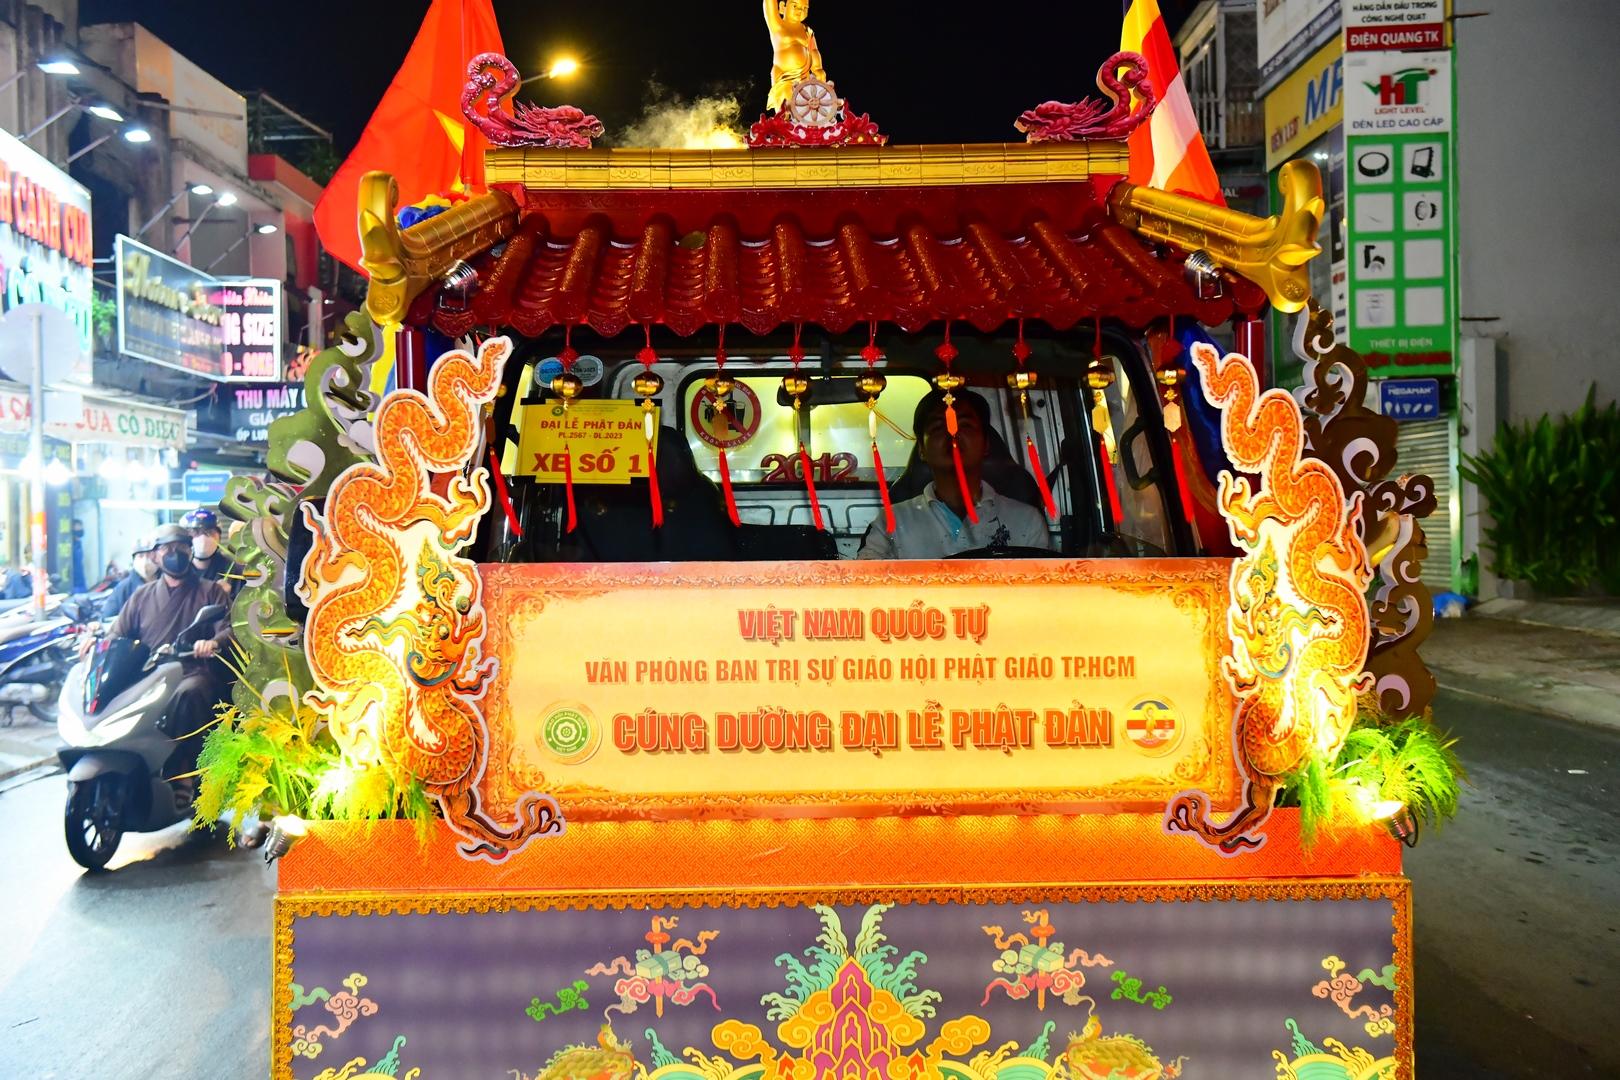 Đoàn xe diễu hành chào mừng Phật đản lần thứ 2647 tại TP.HCM